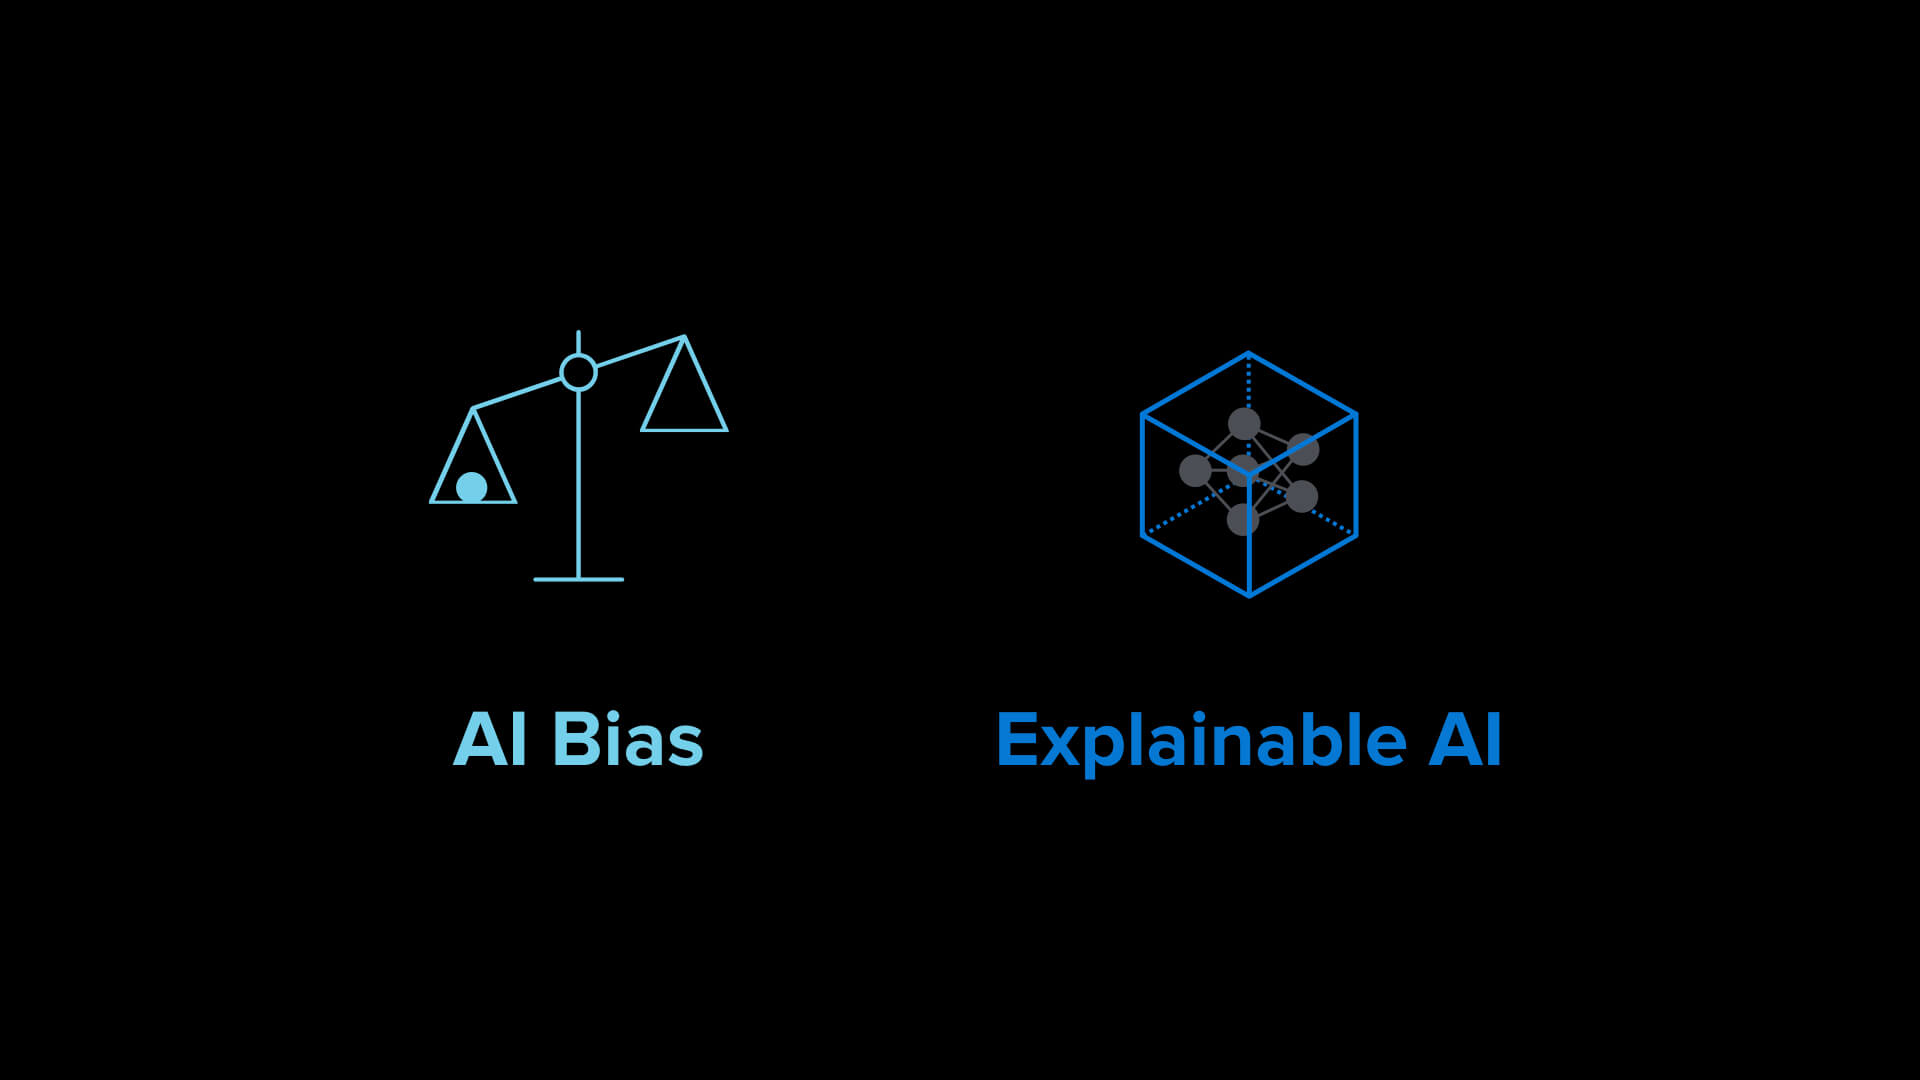 AI bias and explainable AI